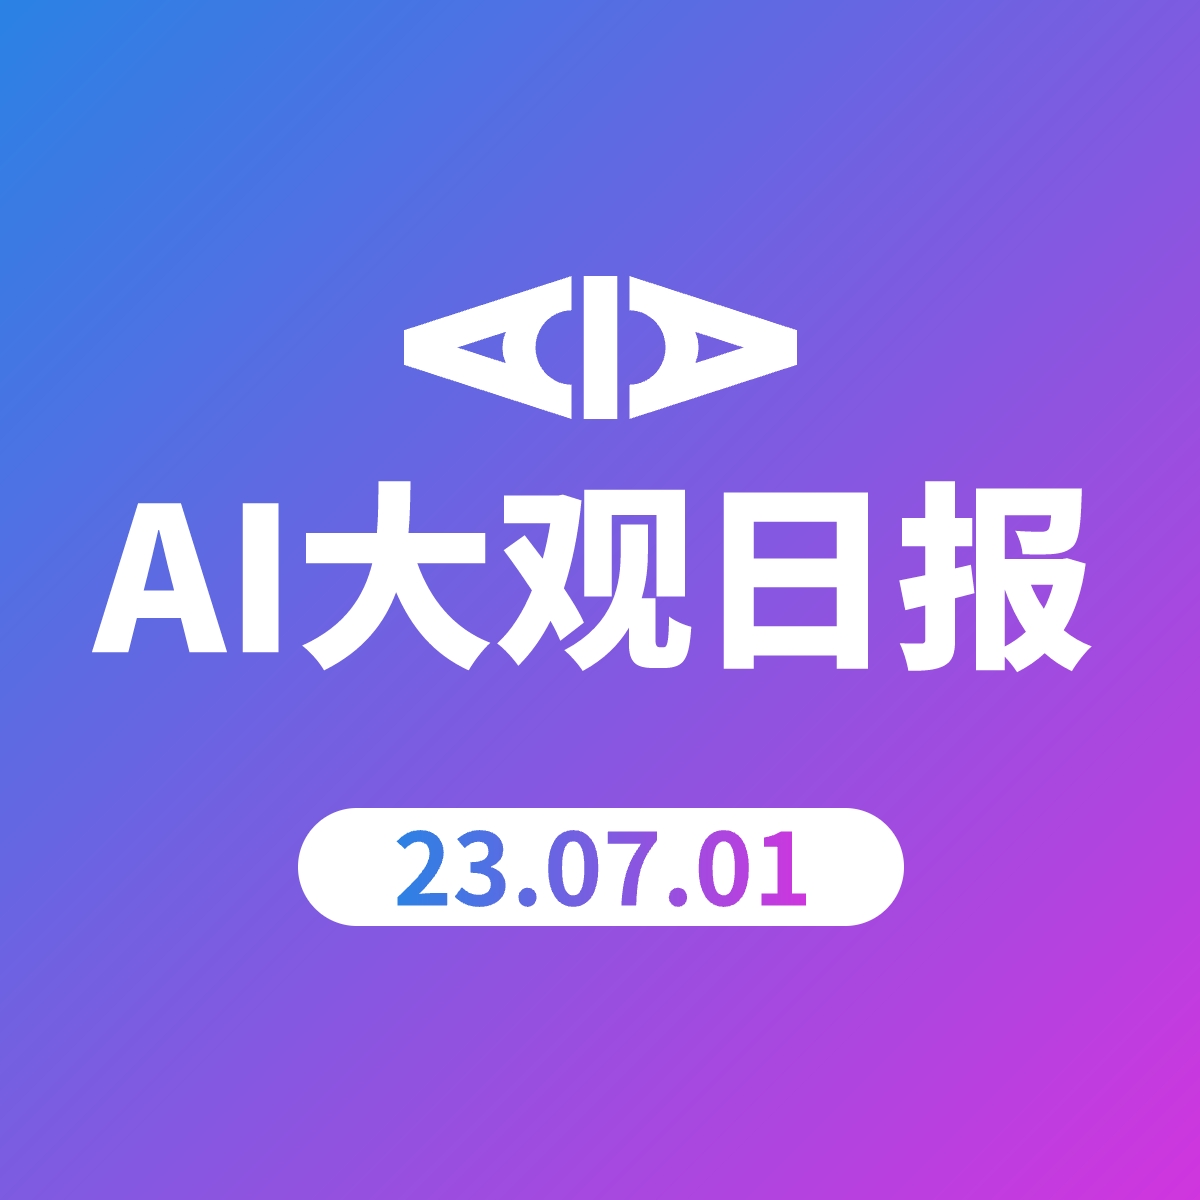 AI大观日报 | 23.07.01